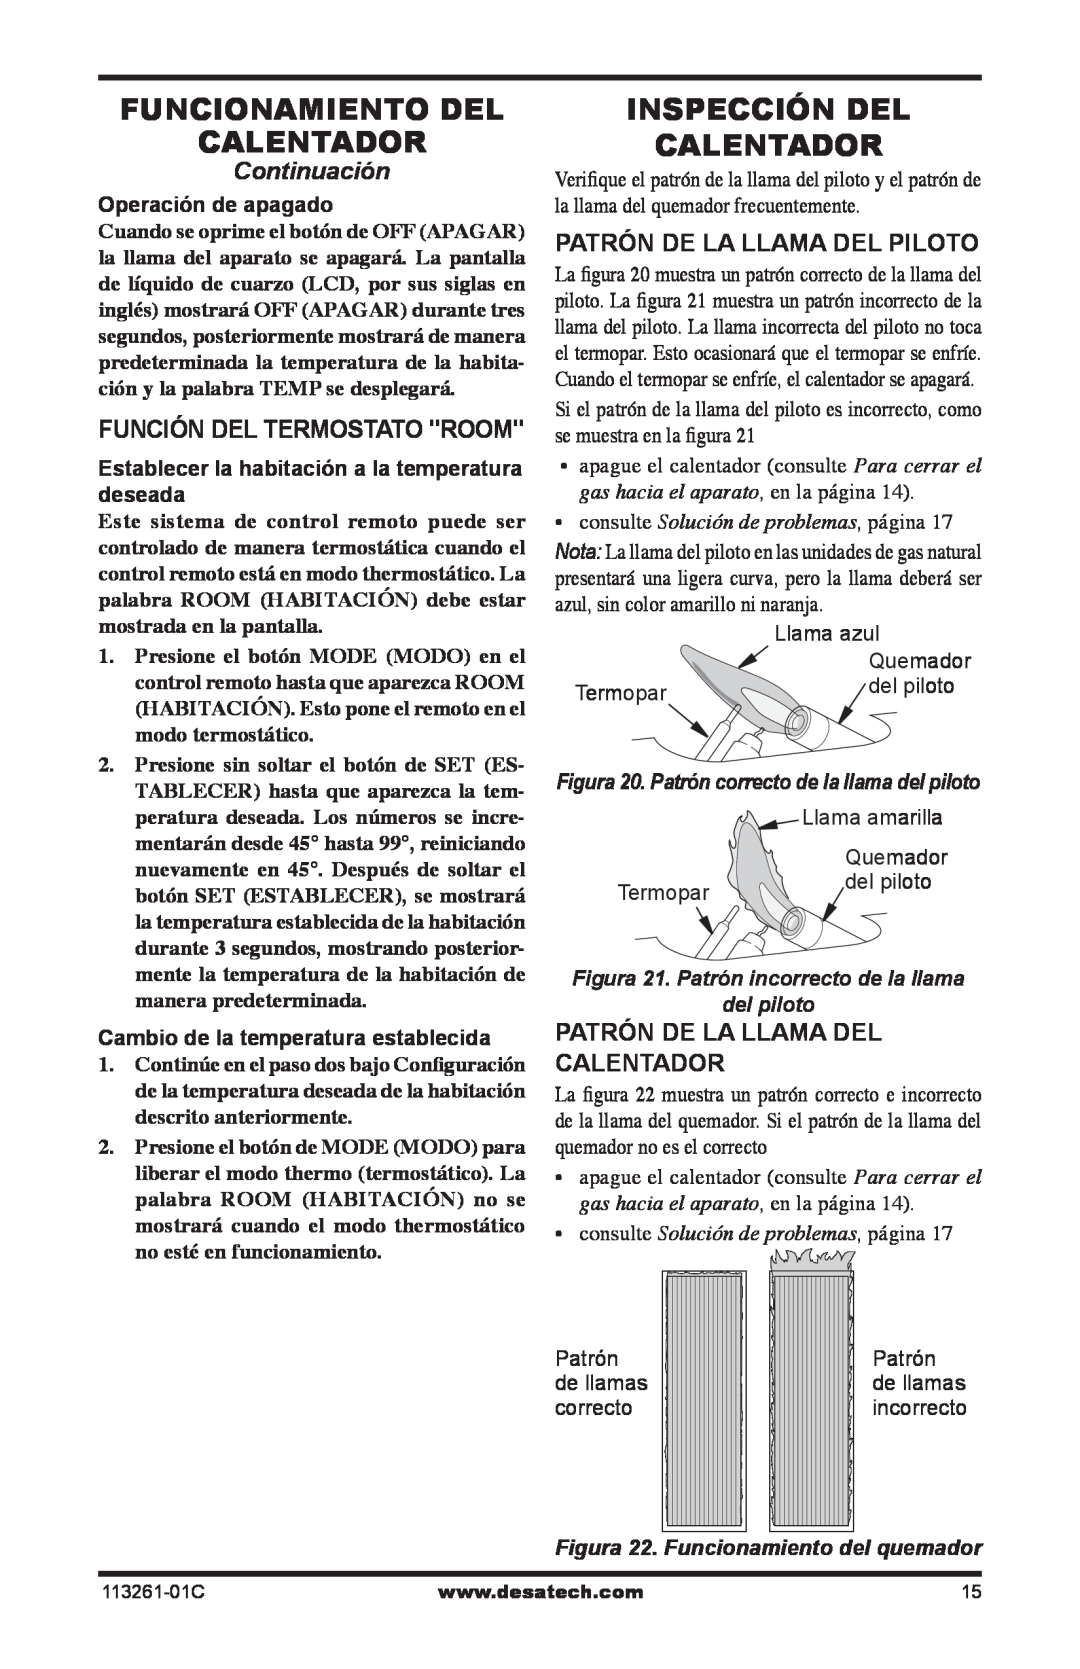 Desa VTN25R Función Del Termostato Room, Patrón De La Llama Del Piloto, Calentador, consulte Solución de problemas, página 